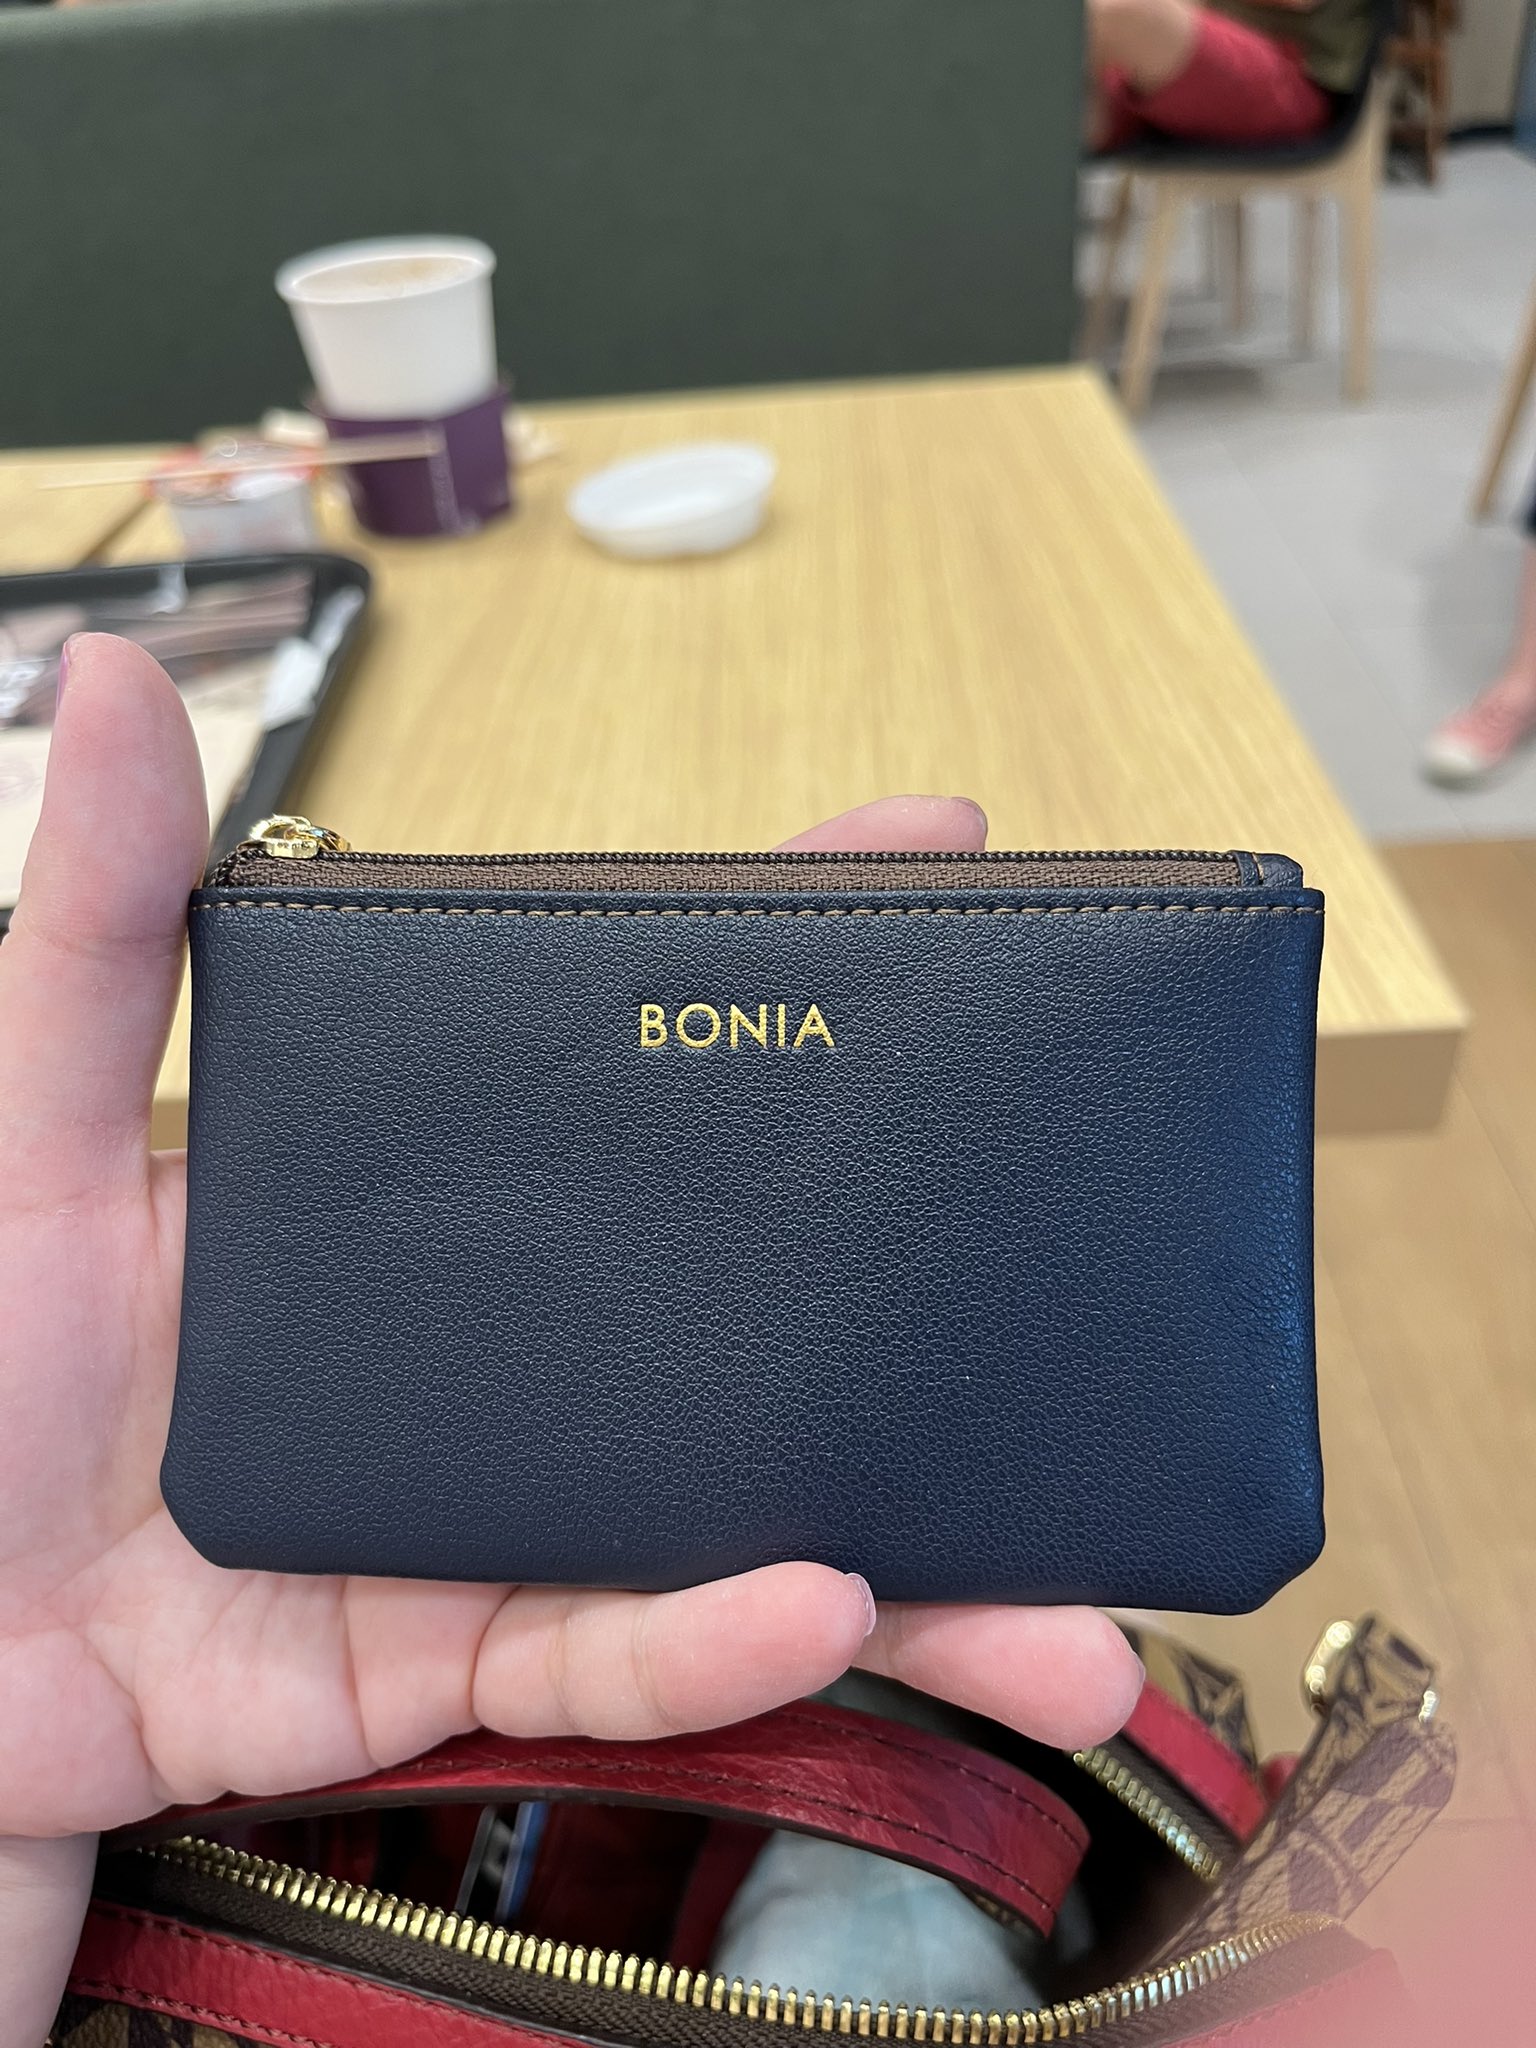 🔥ѕєηѕєℓєѕѕ мαℓι¢є🔥 🌈 🍒🧁💐 on X: The Bonia bag is mine❣️❣️❣️ 🥰 Got a  free 